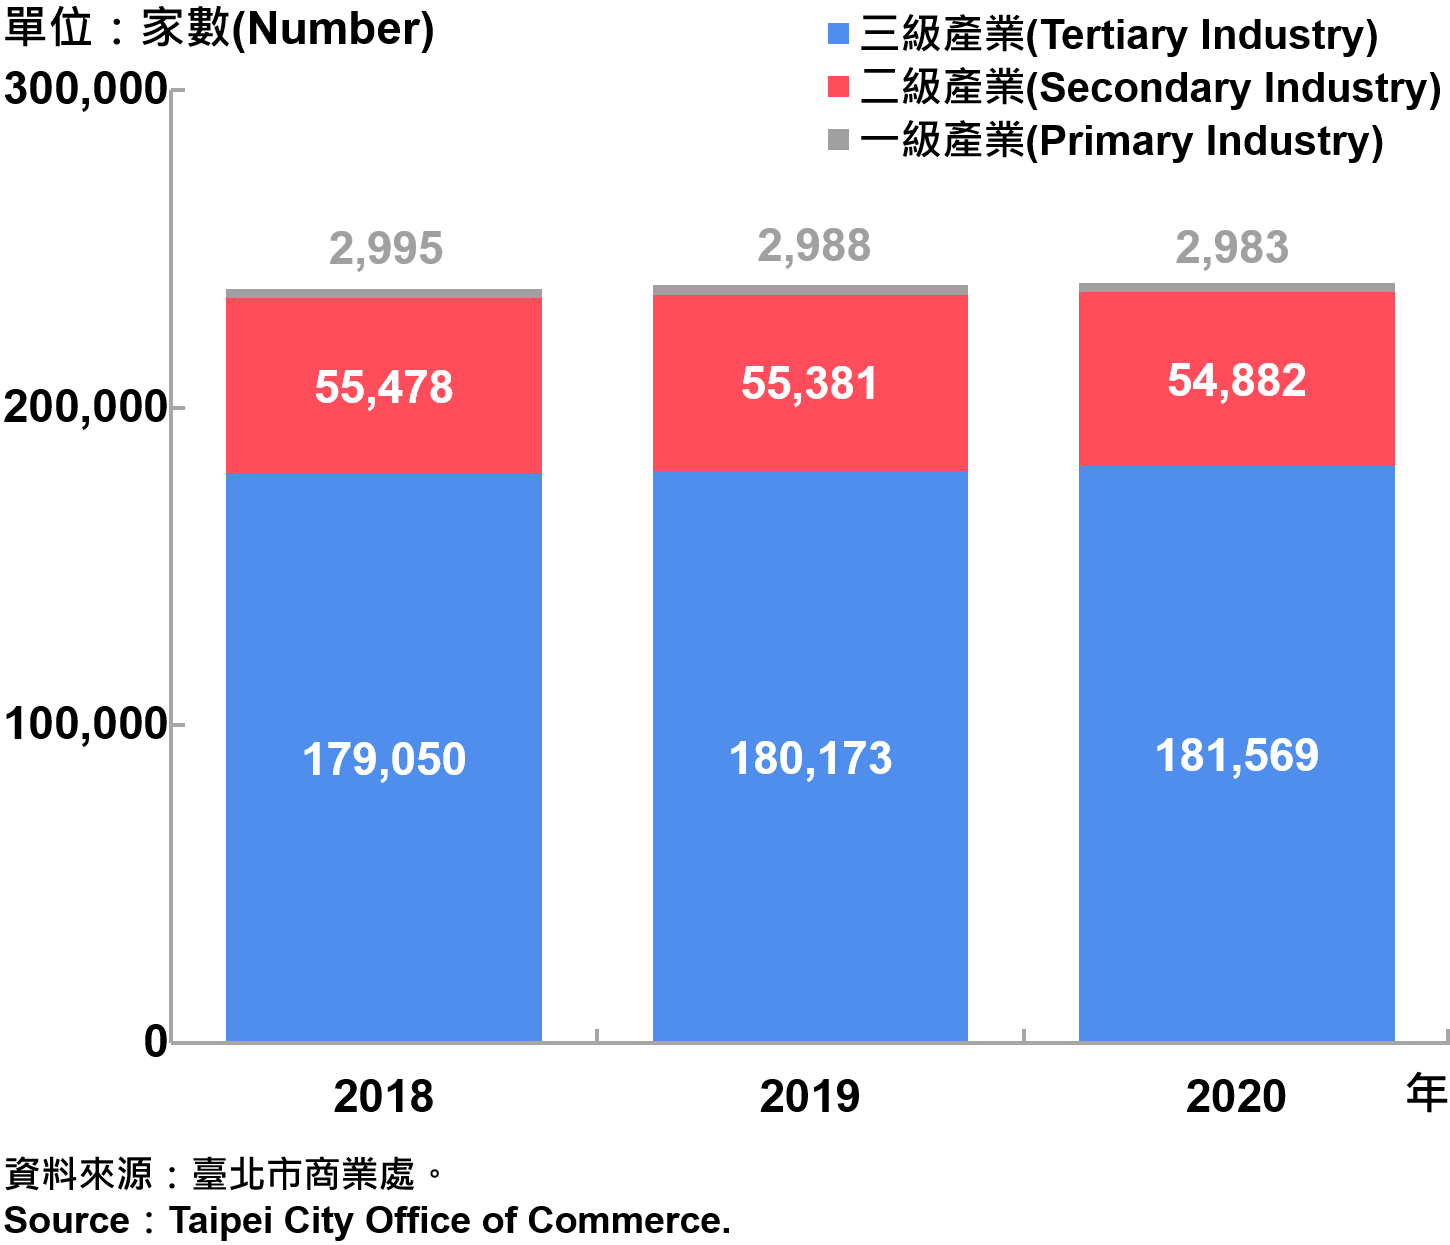 臺北市一二三級產業登記家數—2020 Number of Primary , Secondary and Tertiary Industry in Taipei City—2020